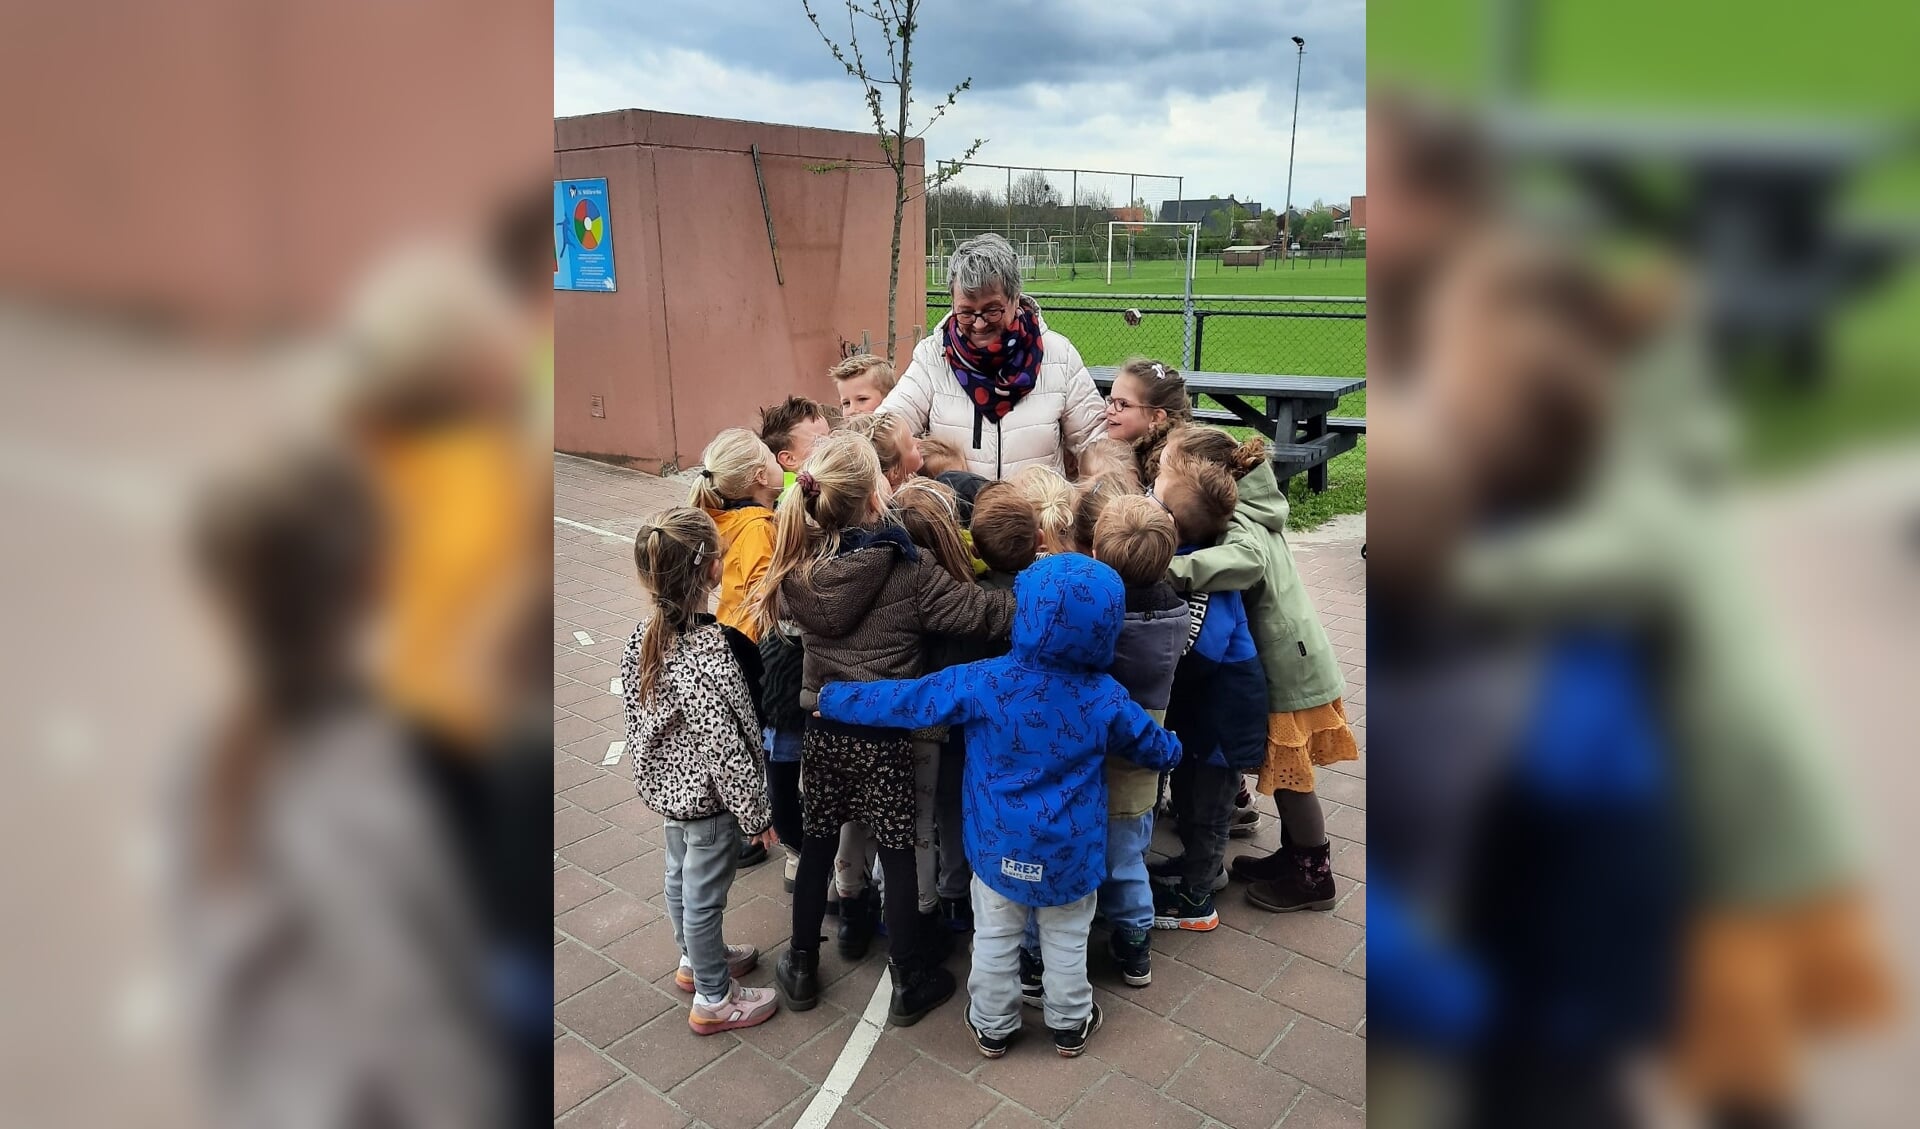 Els Glasbergen krijgt een grote groepsknuffel van de kinderen van groep 1/2. Foto: PR